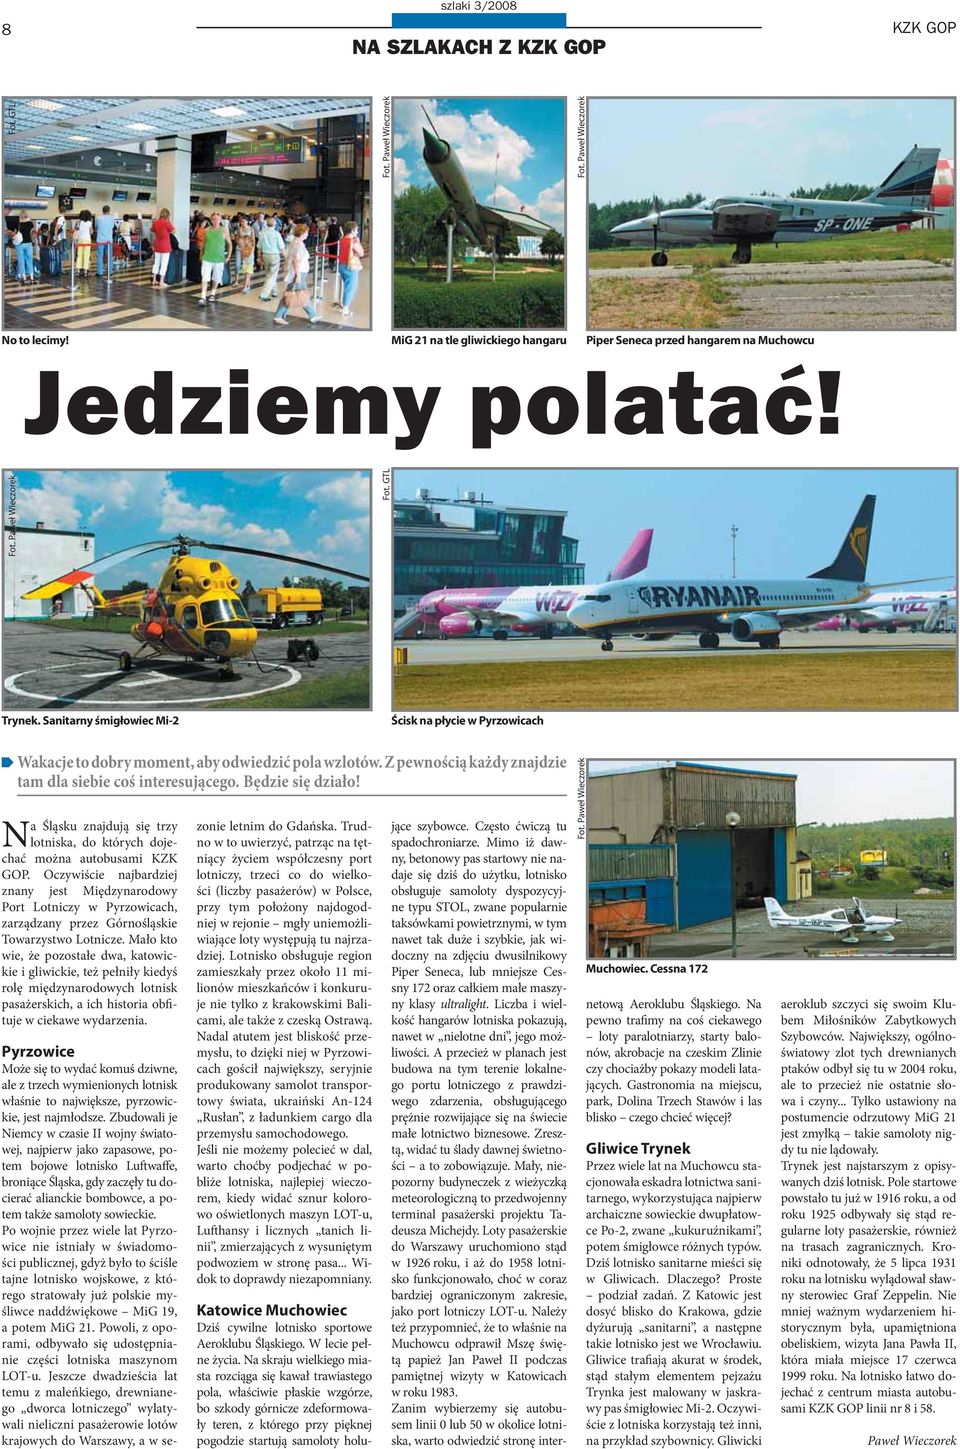 Na Śląsku znajdują się trzy lotniska, do których dojechać można autobusami KZK GOP.